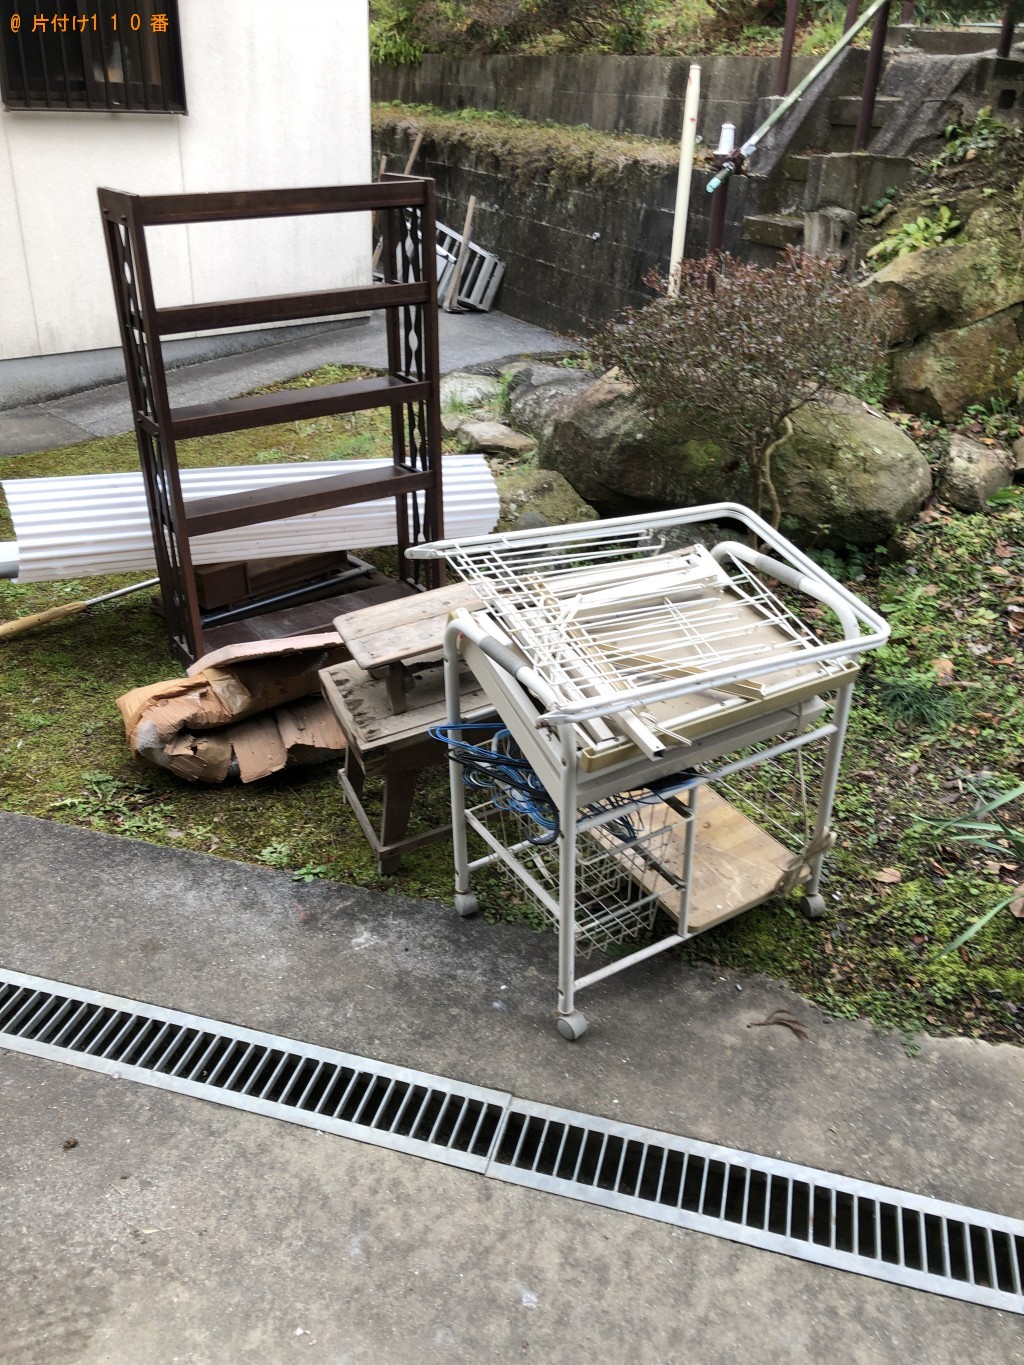 【飯塚市】整理タンス、2人用ダイニングテーブルの回収・処分ご依頼